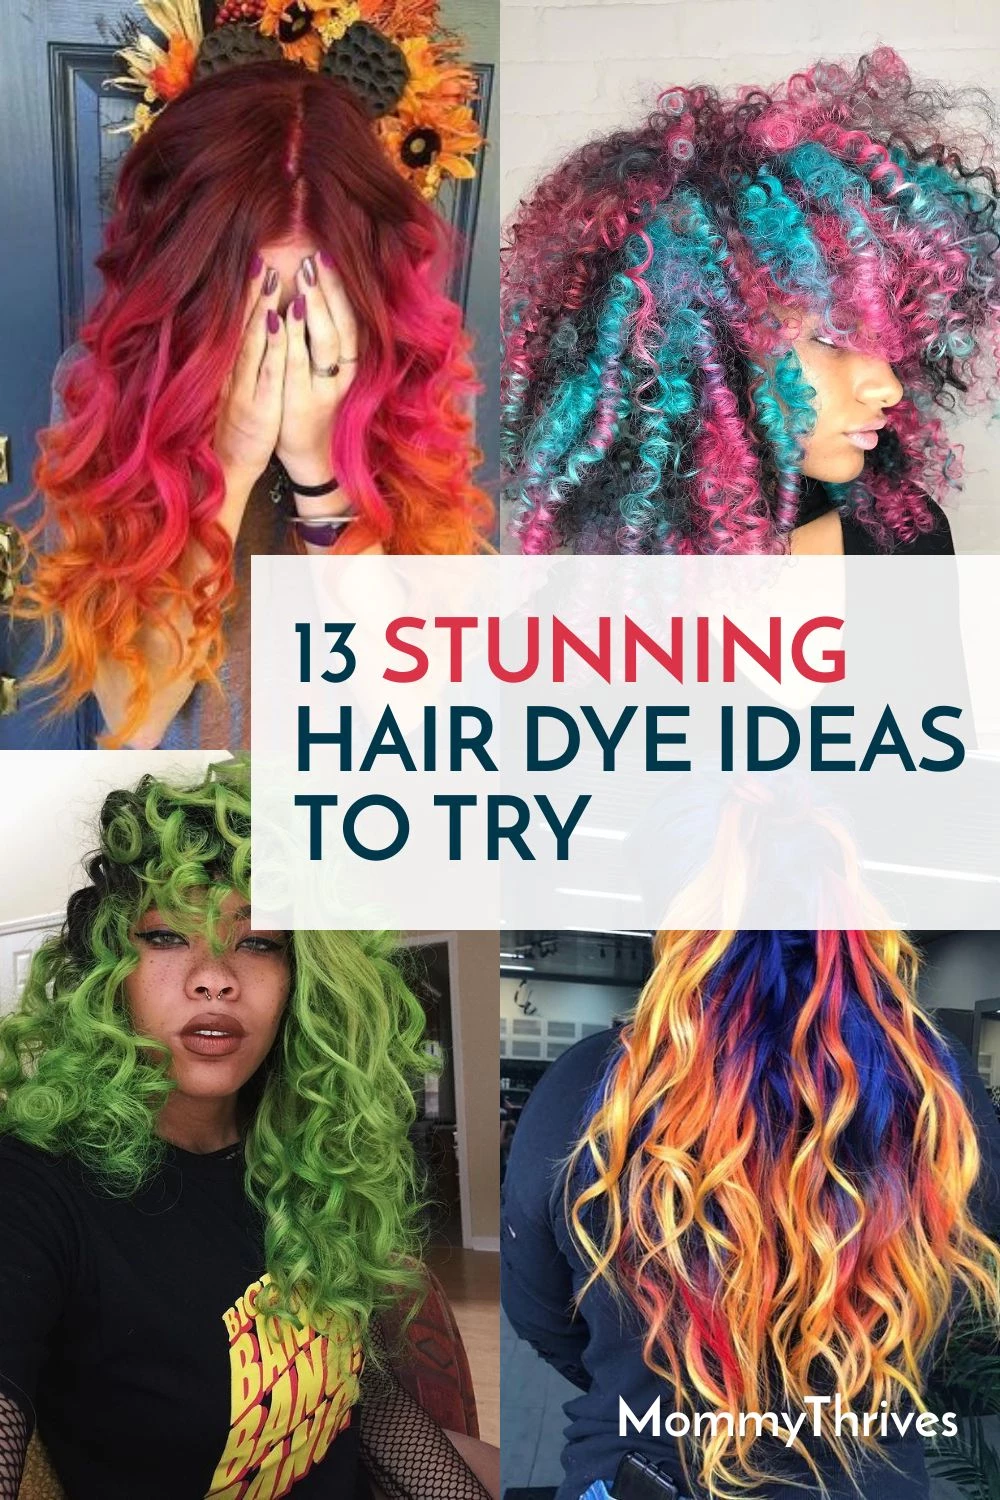 10 Ash Grey Hair Color Ideas For Your Next Salon Visit